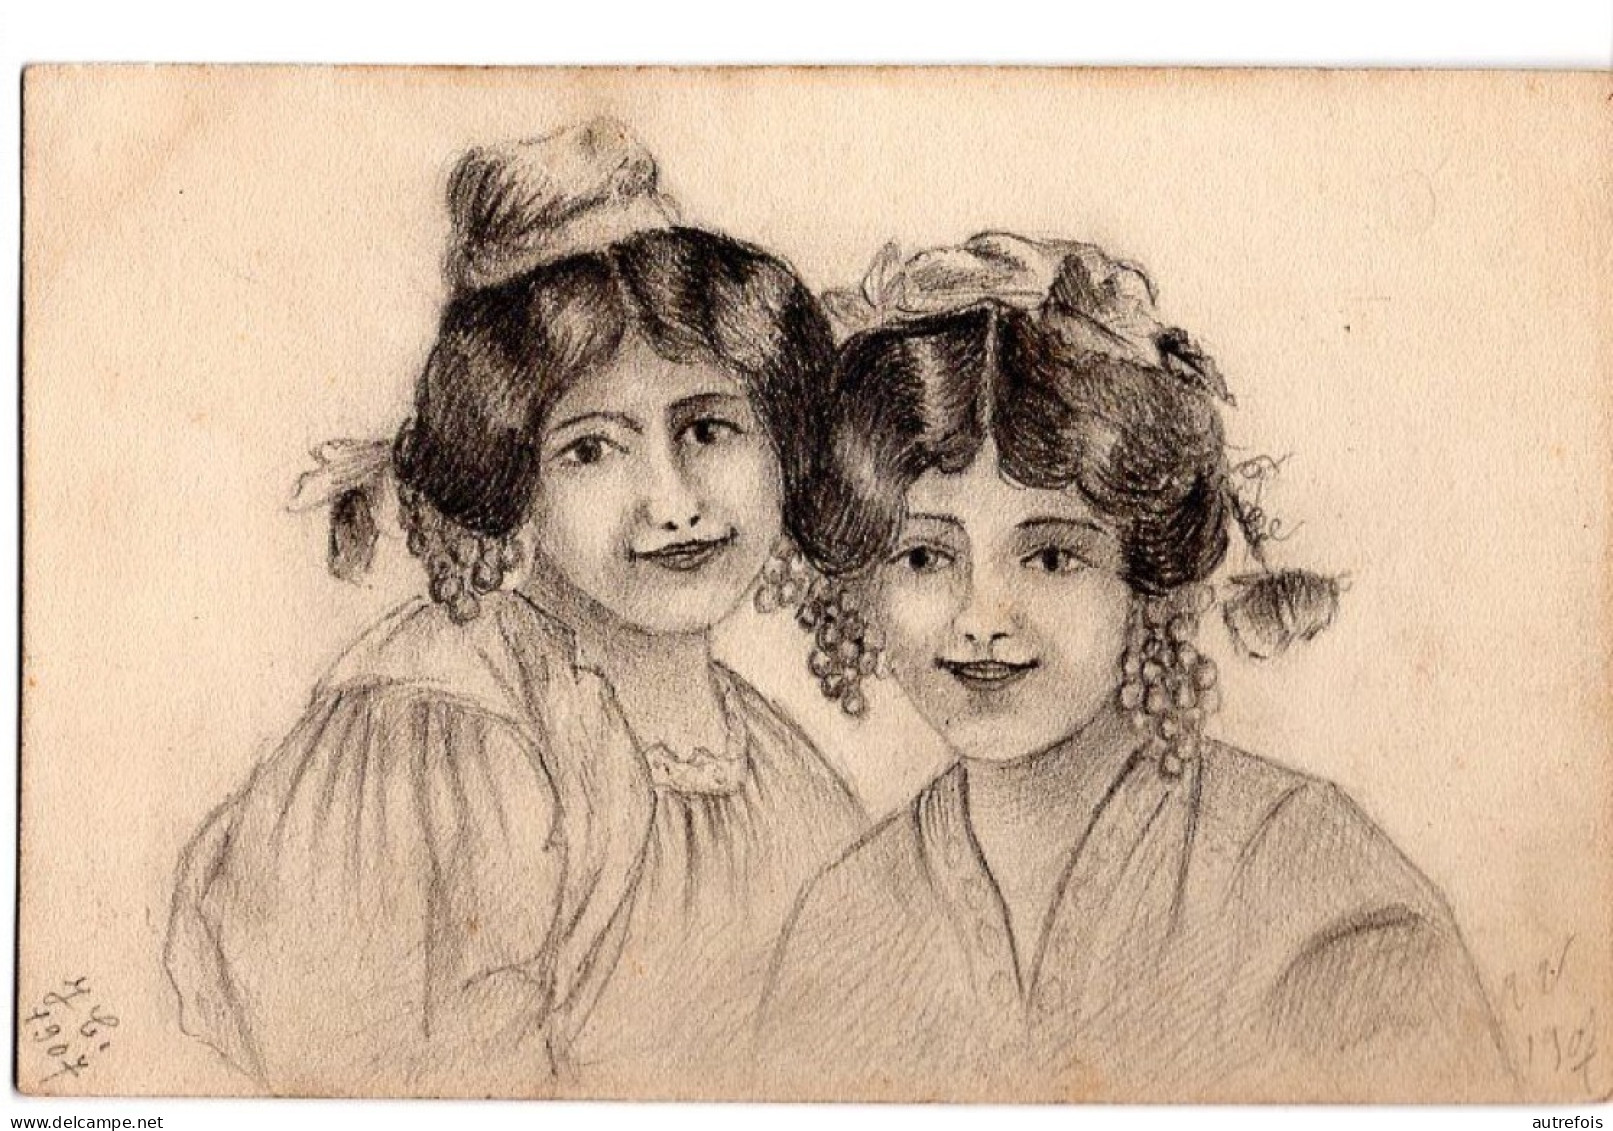 PORTRAITS DE JEUNES FILLE  -  DESSIN AU CRAYON SUR CARTE POSTALE - SIGNEE J C 1907 - Zeichnungen